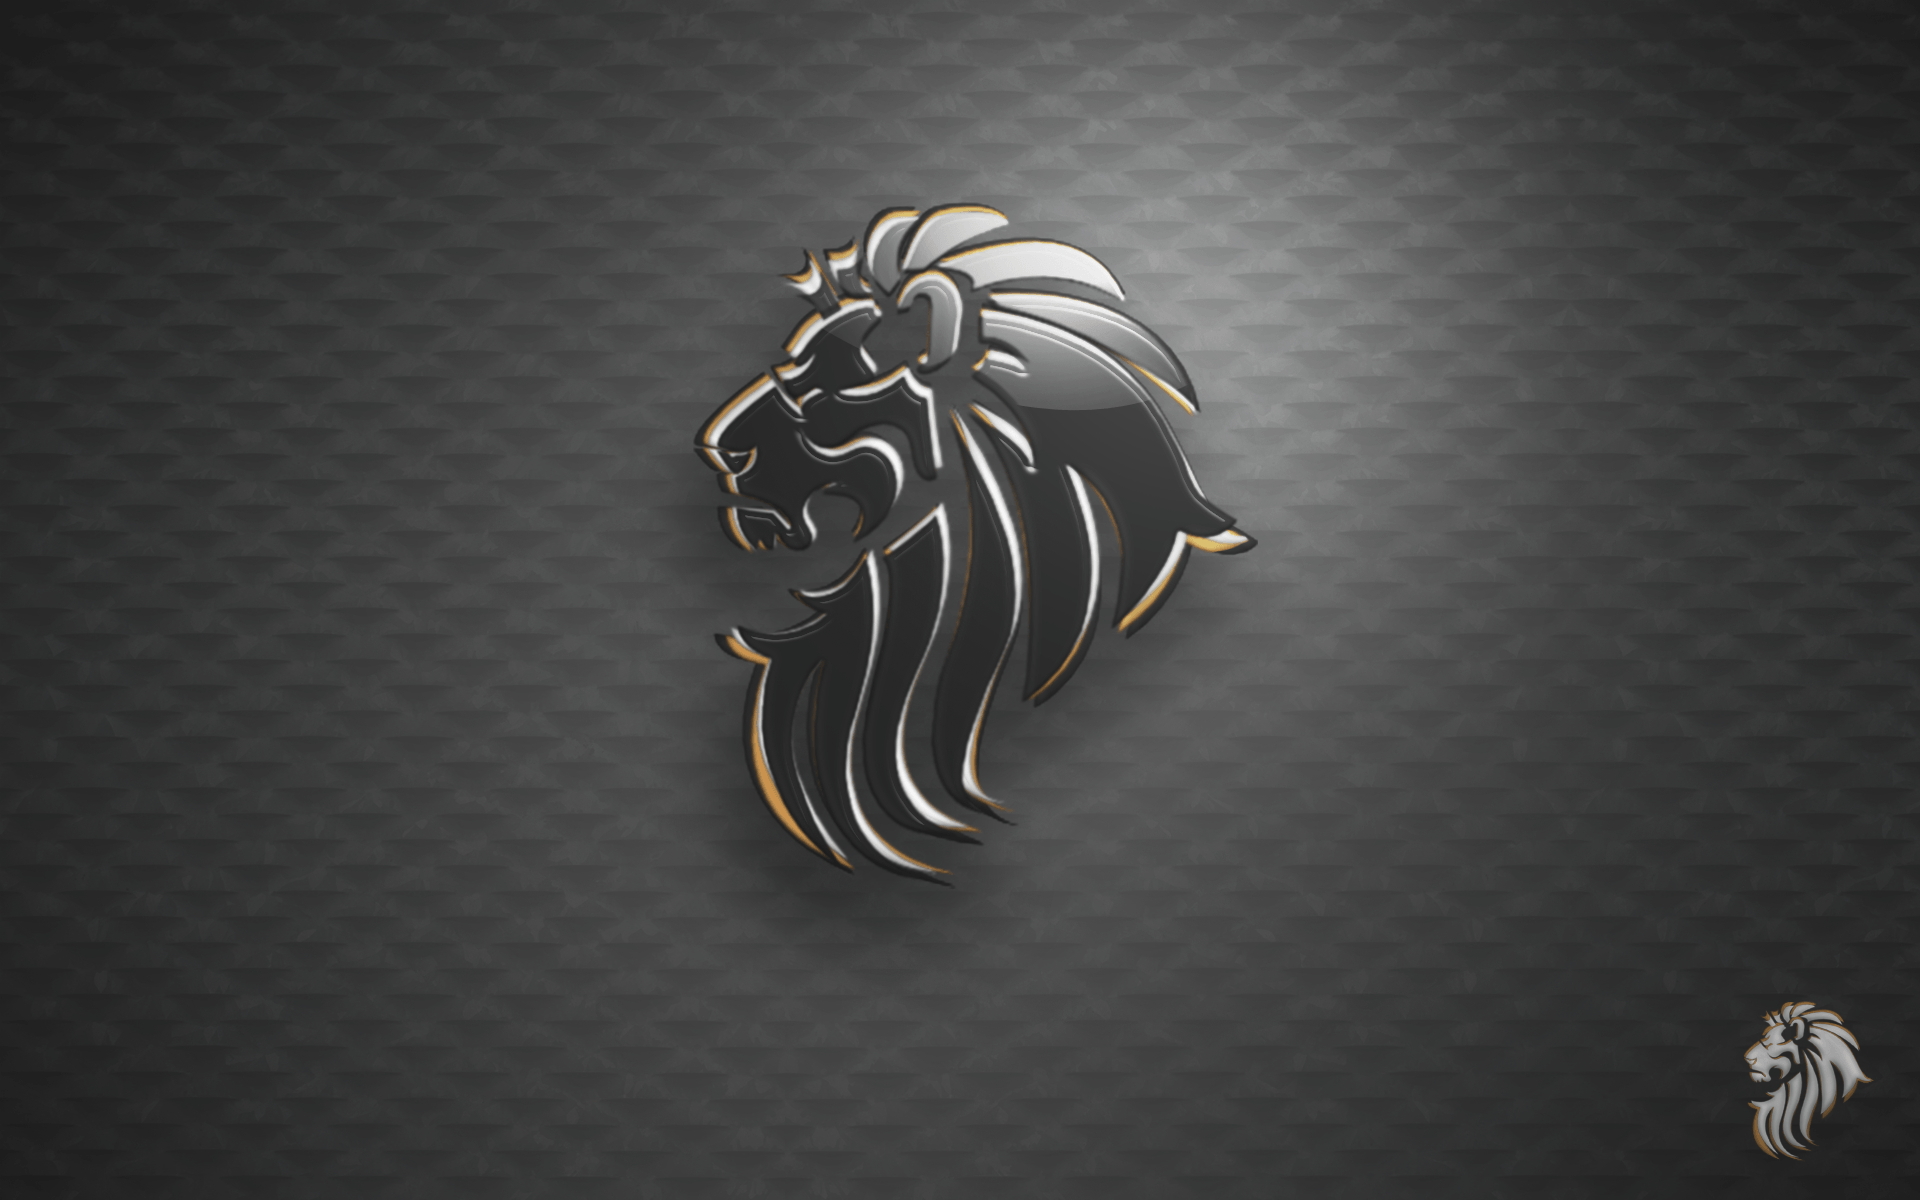 Metal Lion Logo - Lion Logo Wallpaper